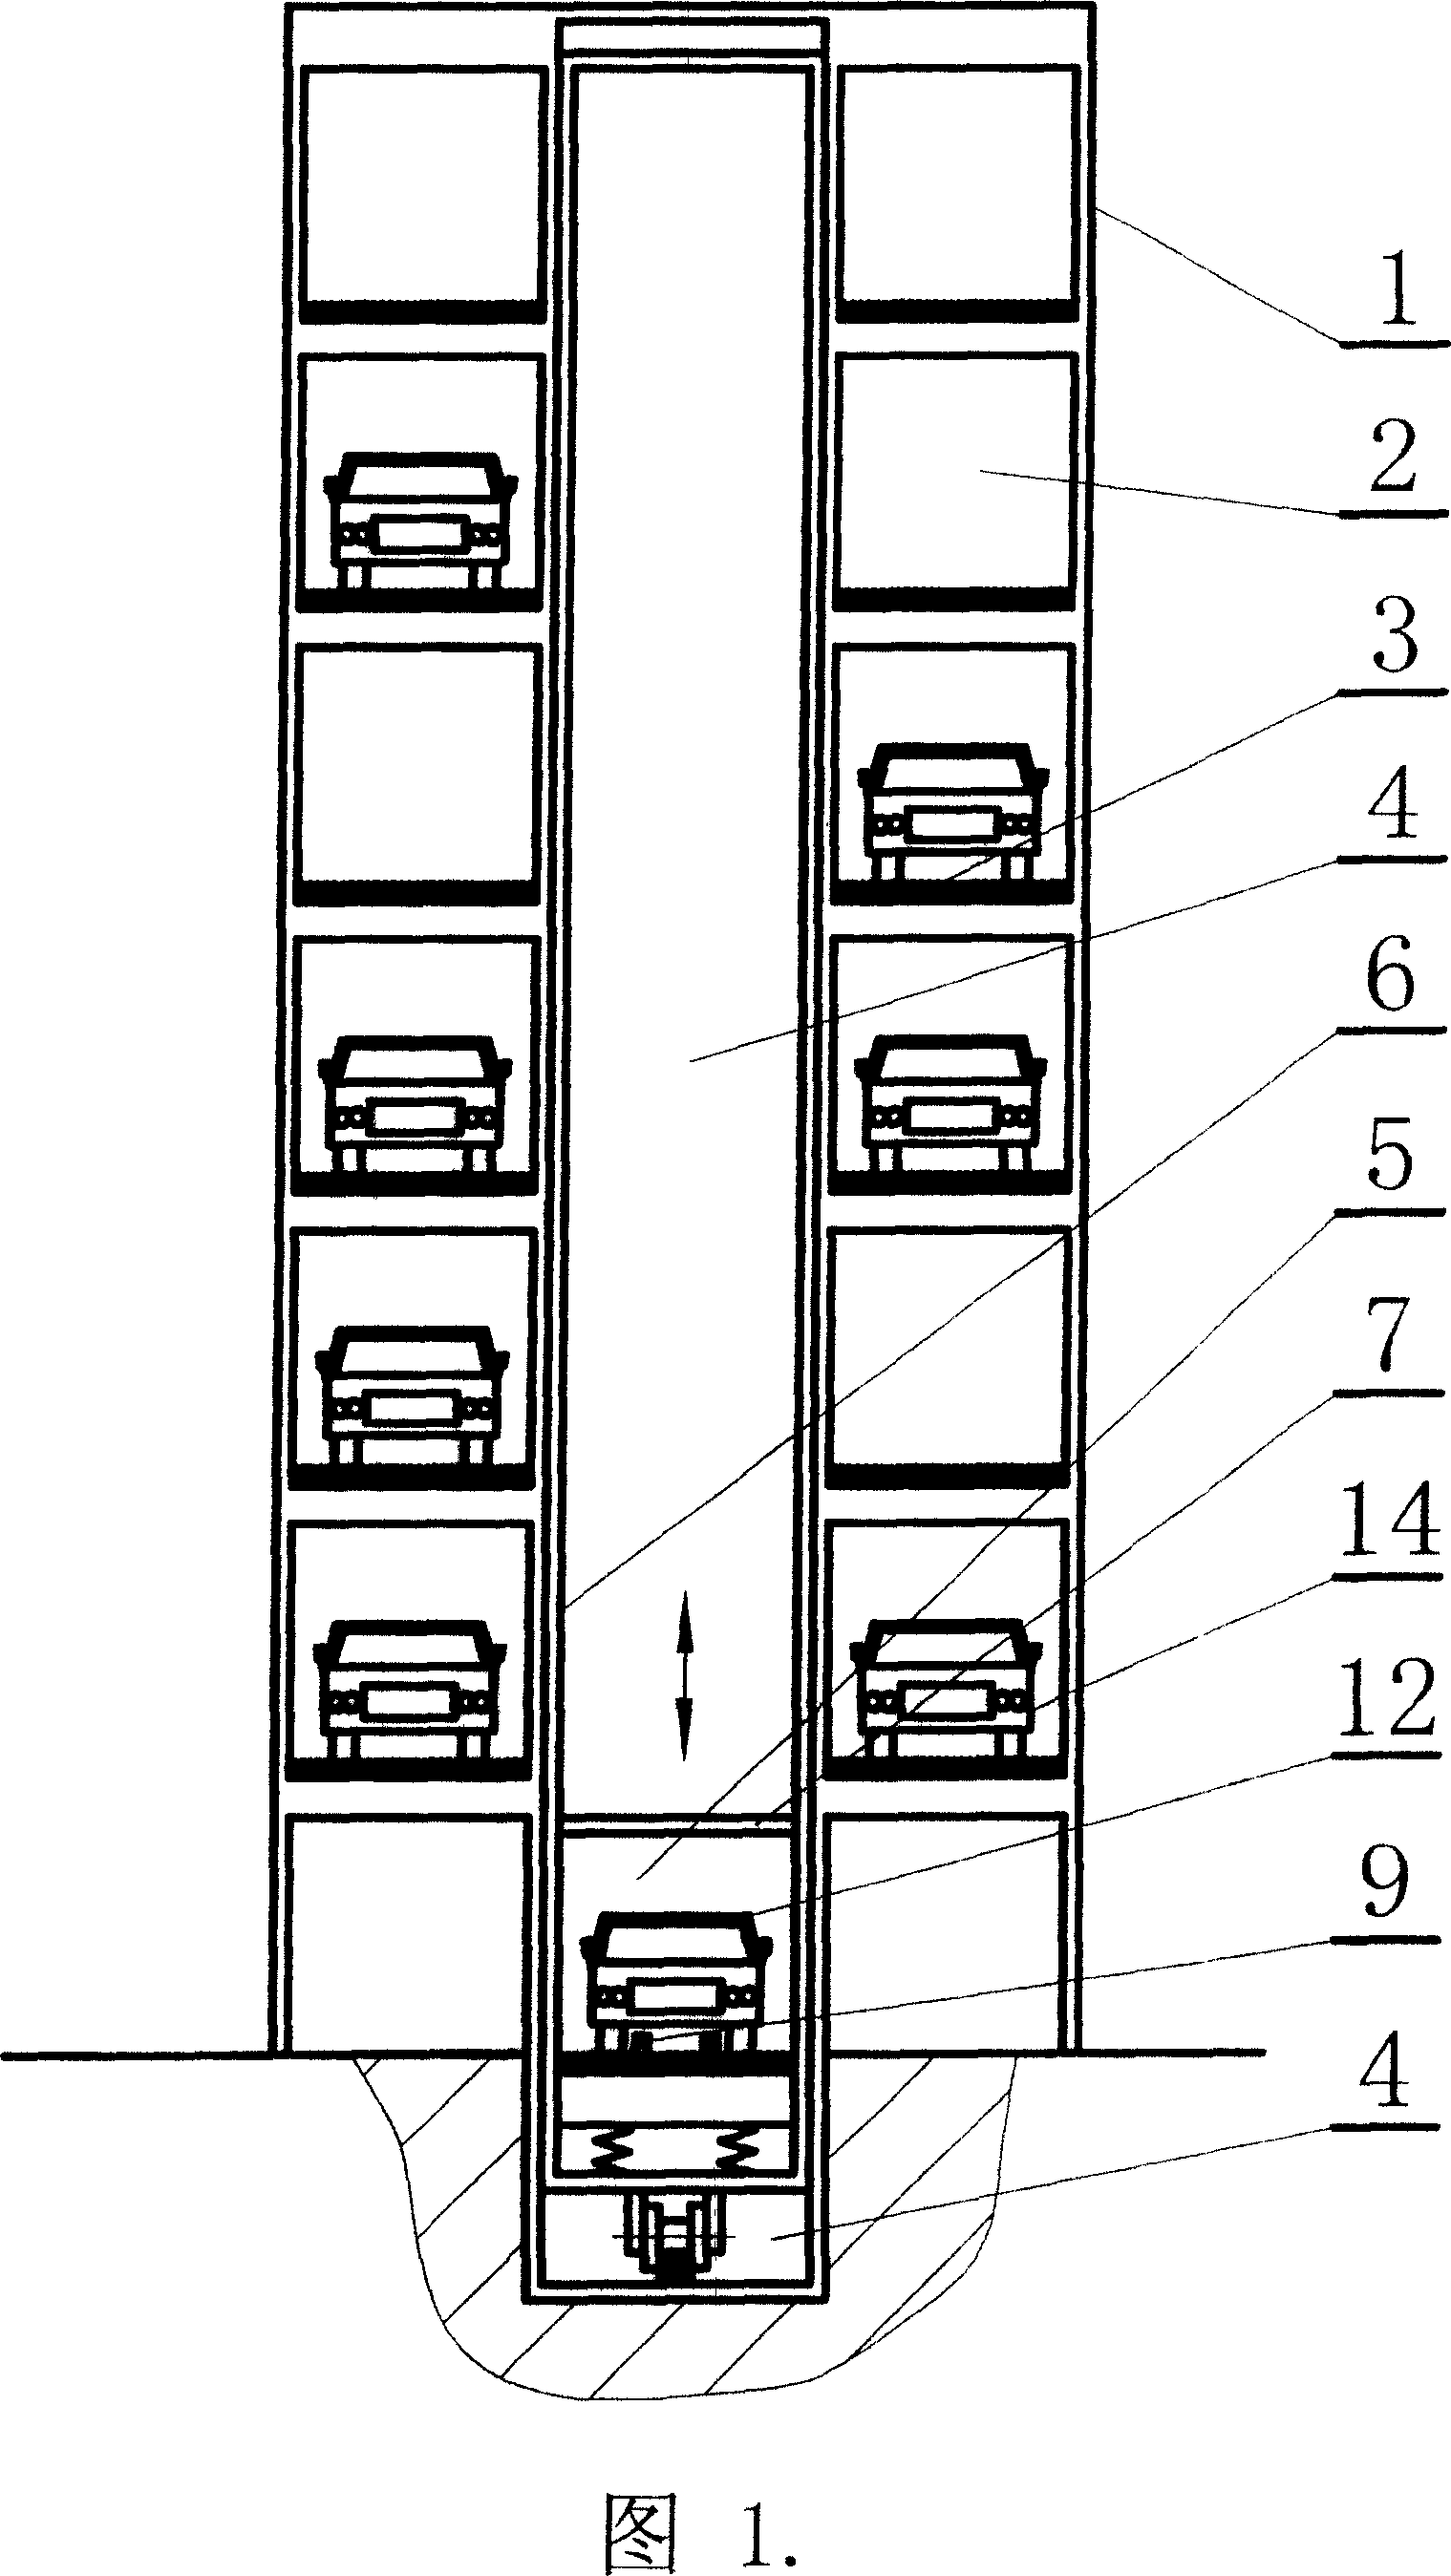 Single lane stacker transport apparatus taking sending type rollaway parking equipment